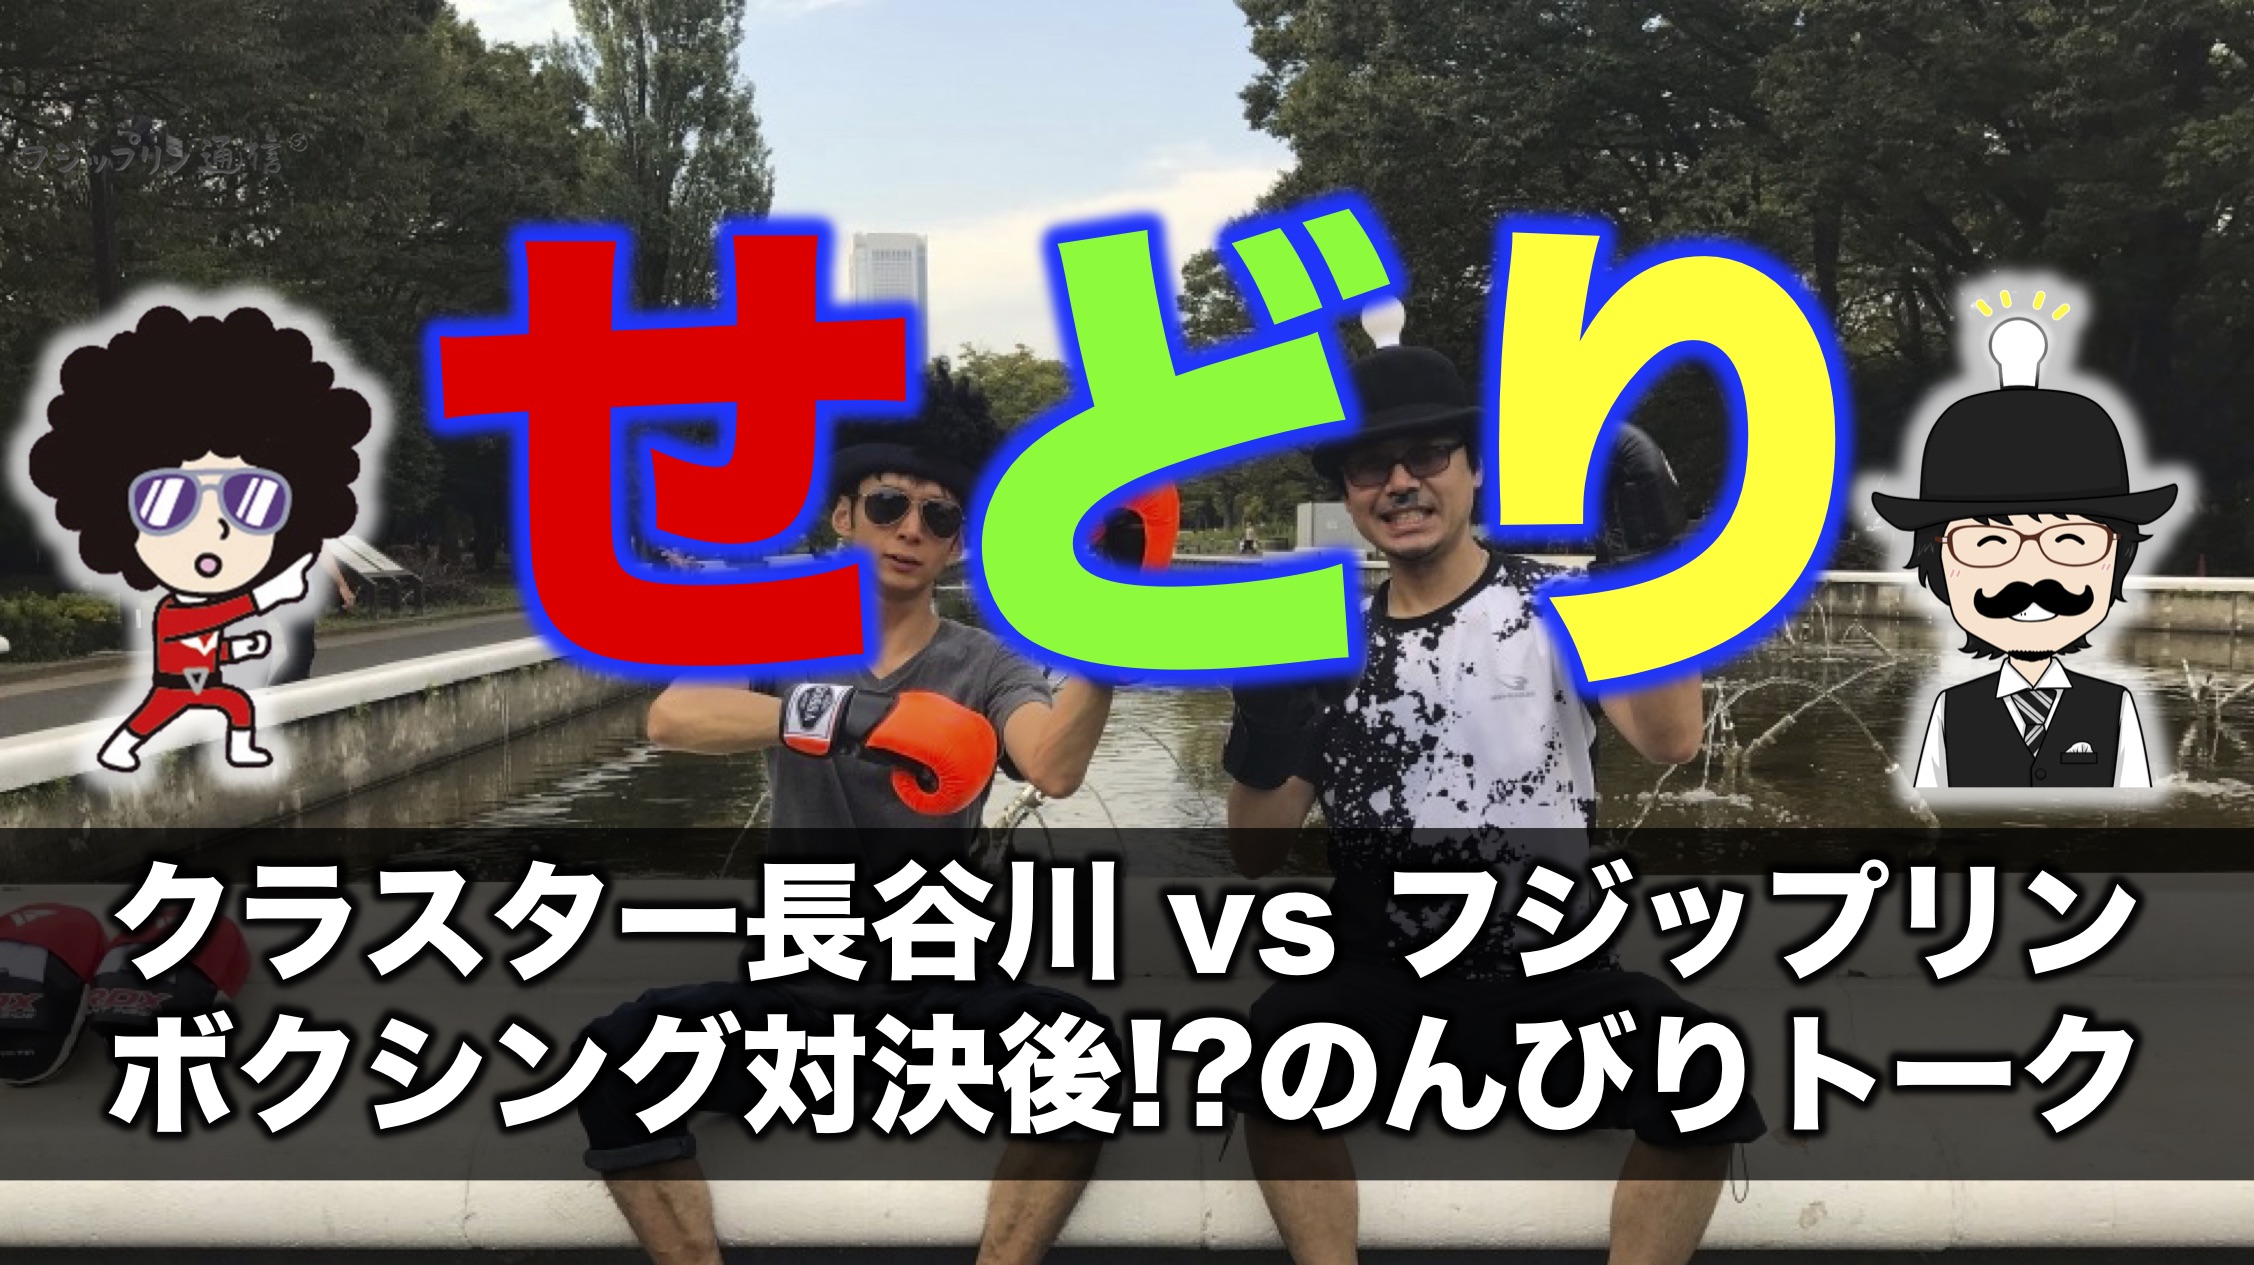 【せどり】クラスター長谷川師匠vsフジップリン。ボクシング対決後!?のんびりトーク。